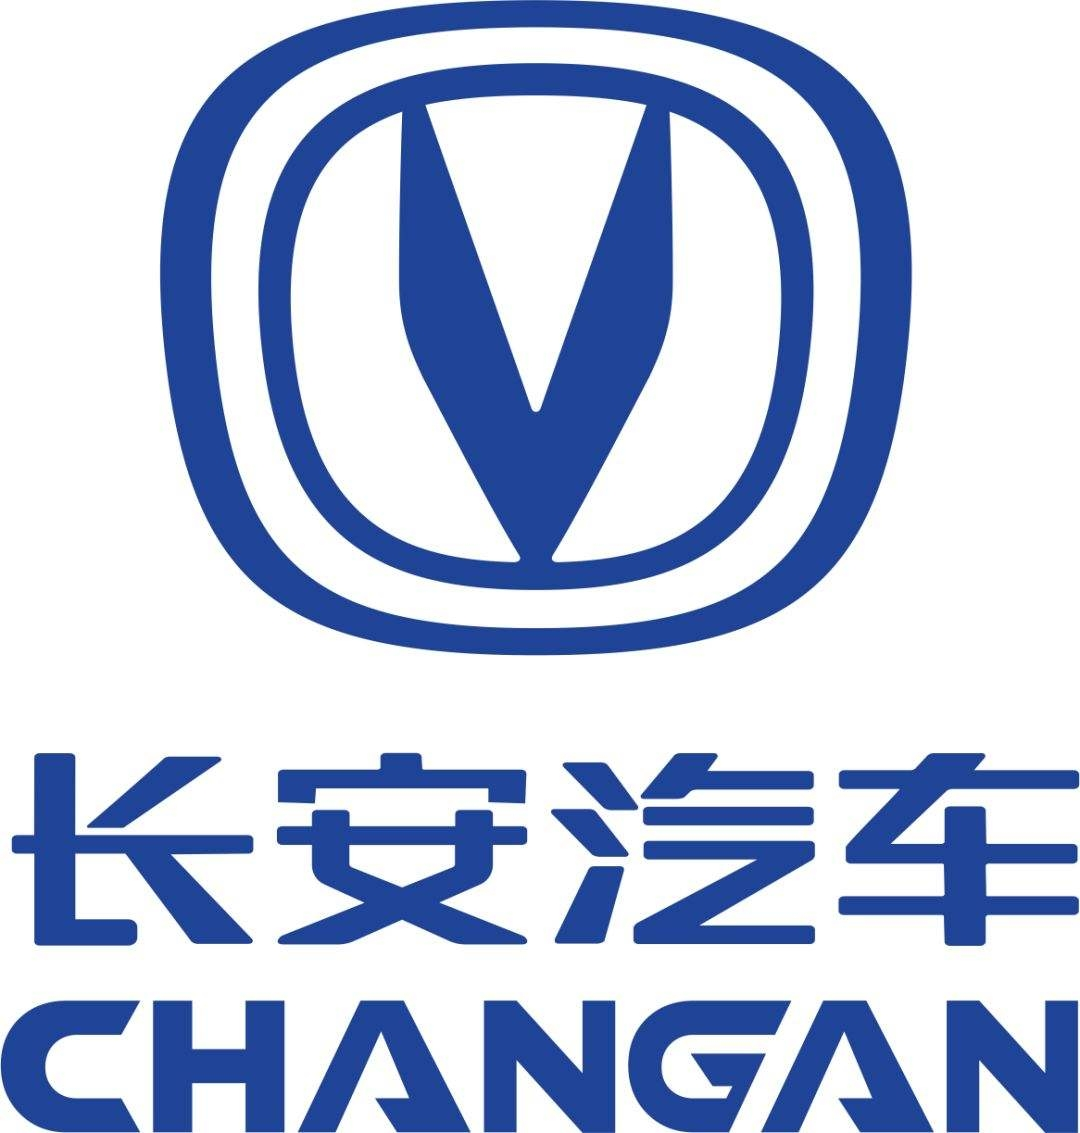 长安汽车金融logo图片